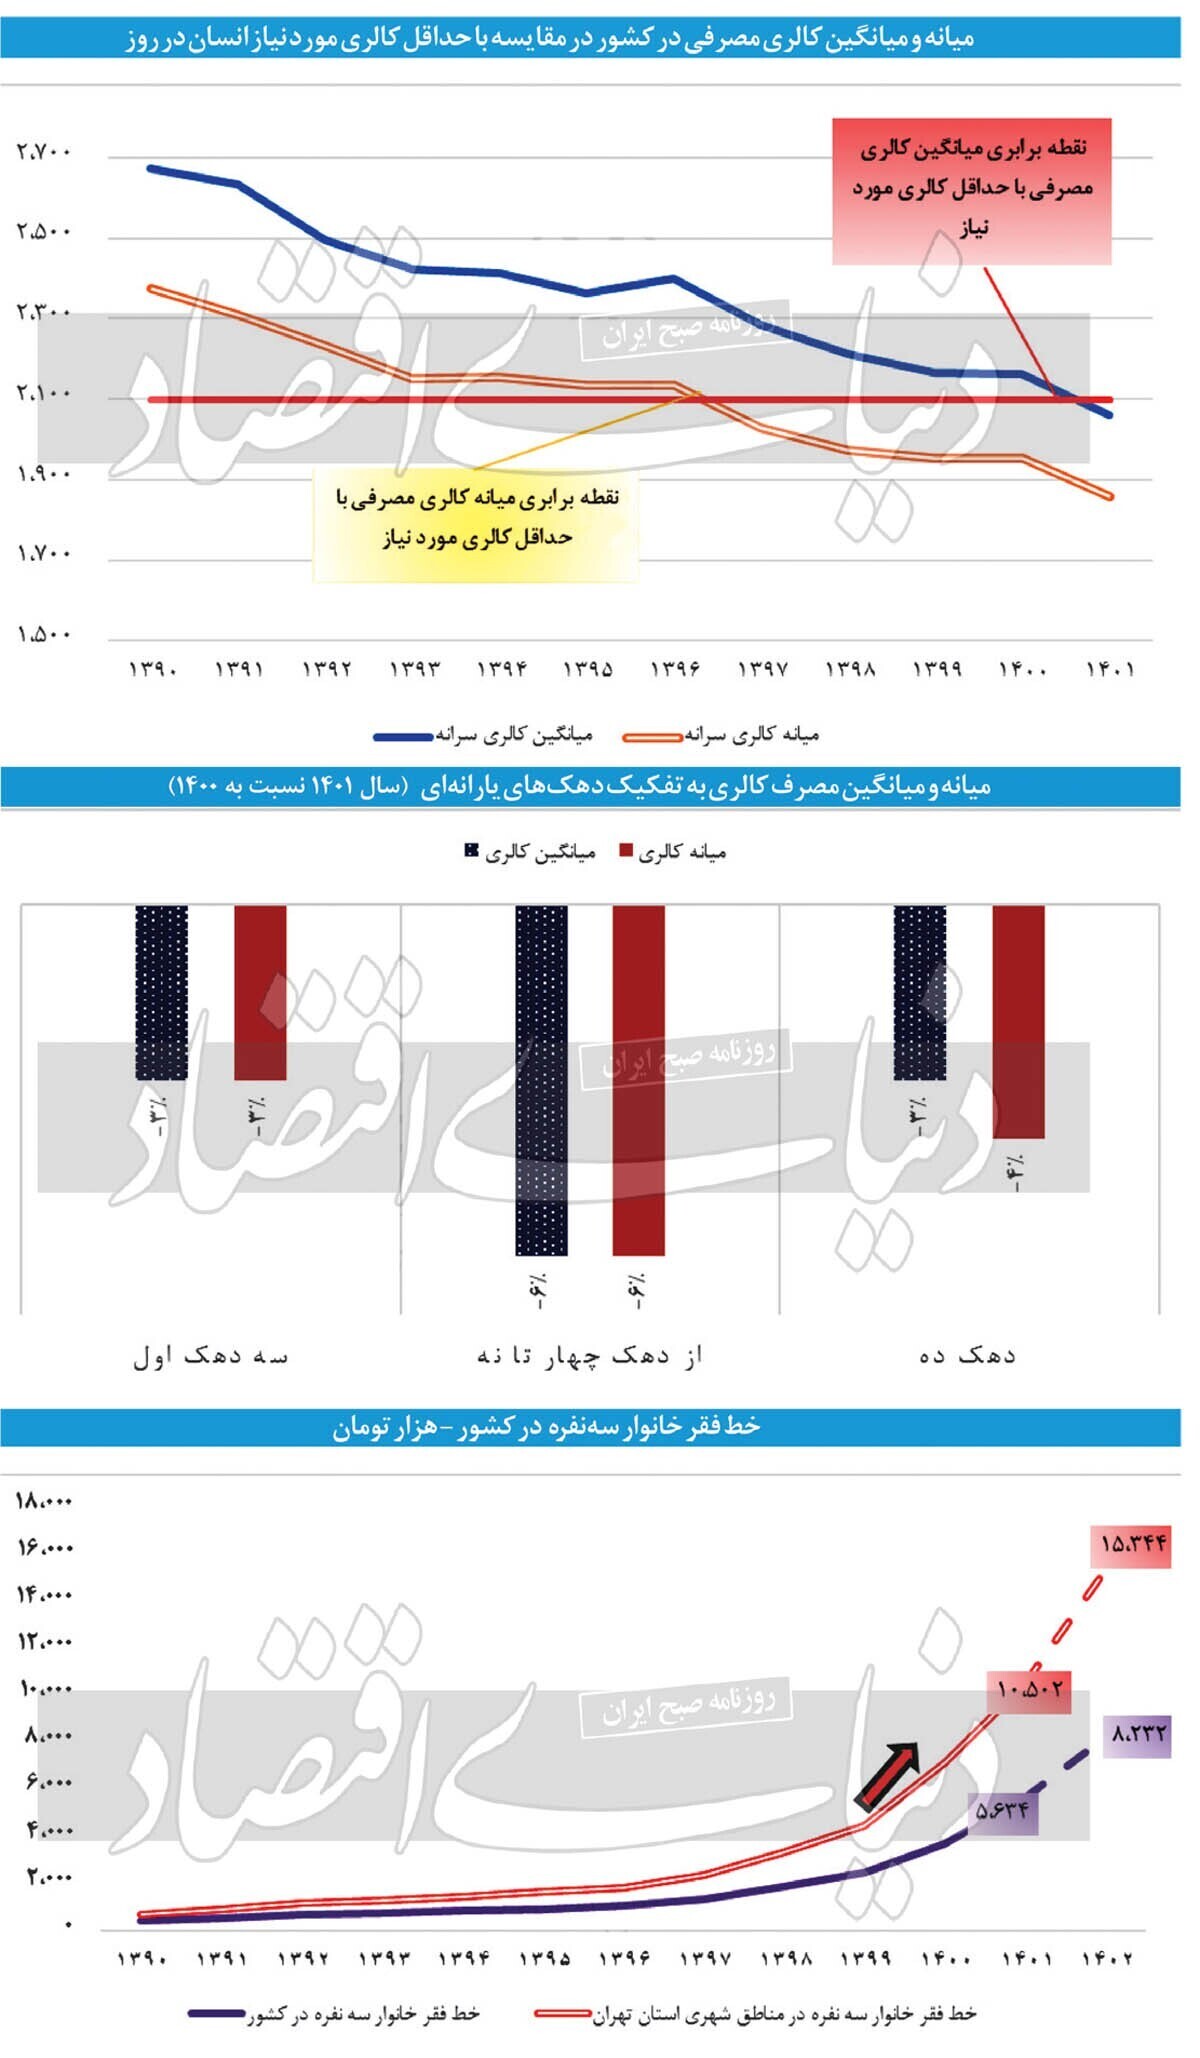 کالری مصرفی نیمی از ایرانیان در سال ۱۴۰۱ کمتر از استاندارد بوده است